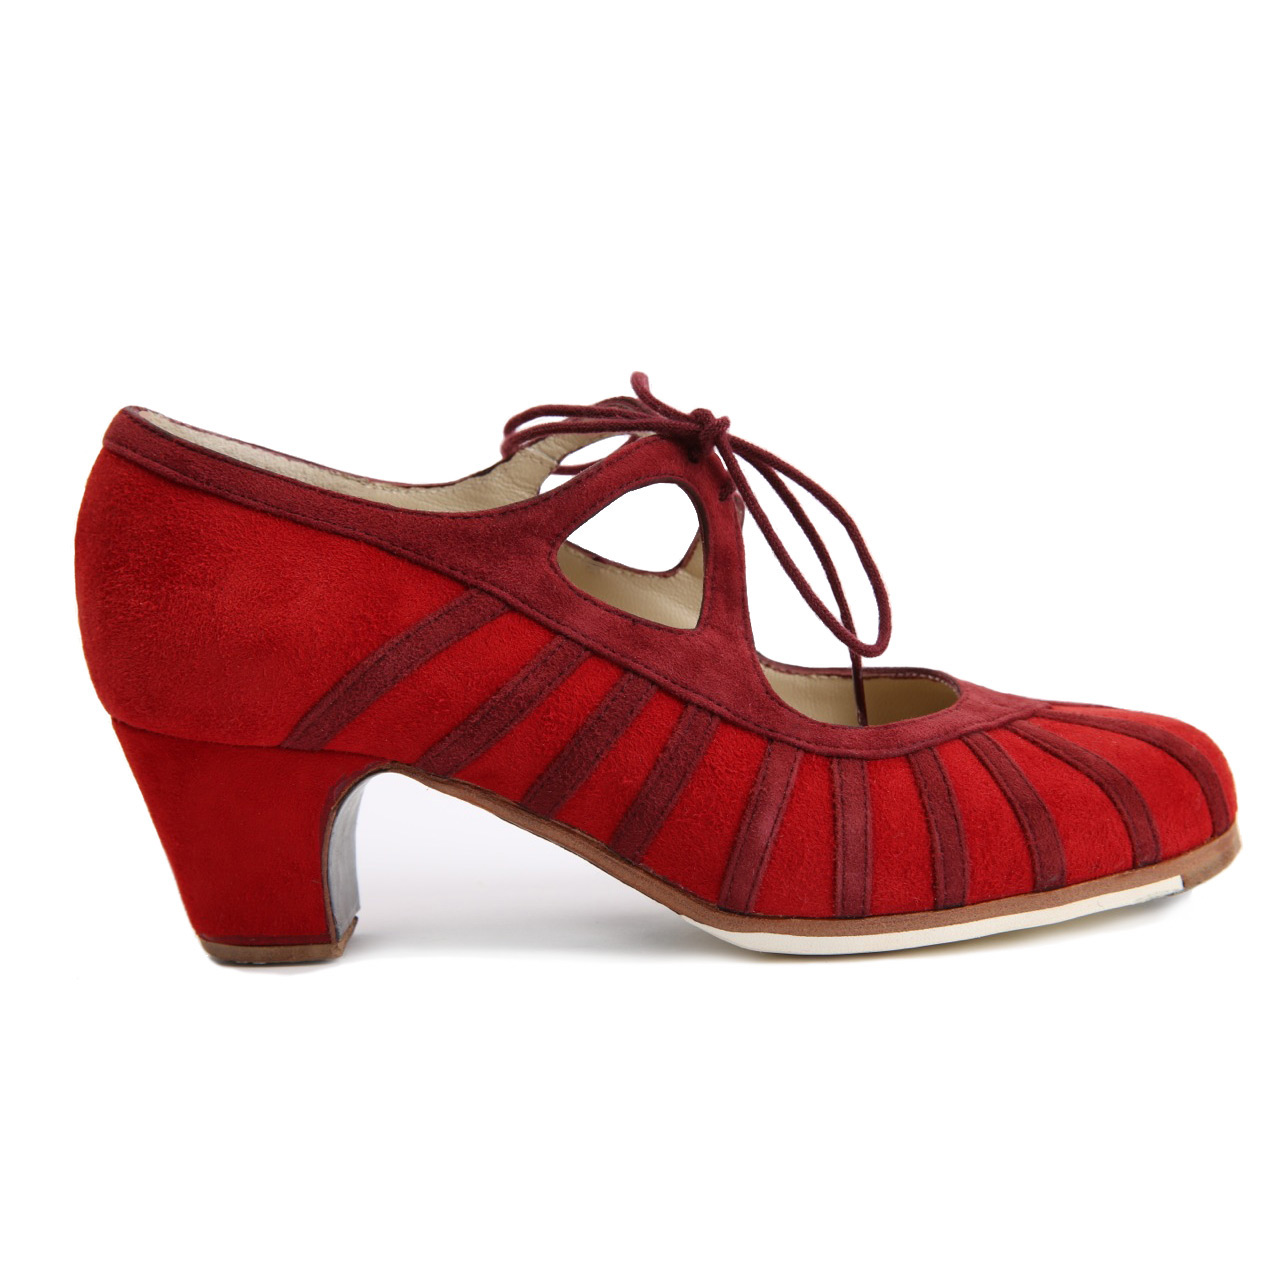 Chaussures Flamenco Primor Bordeaux